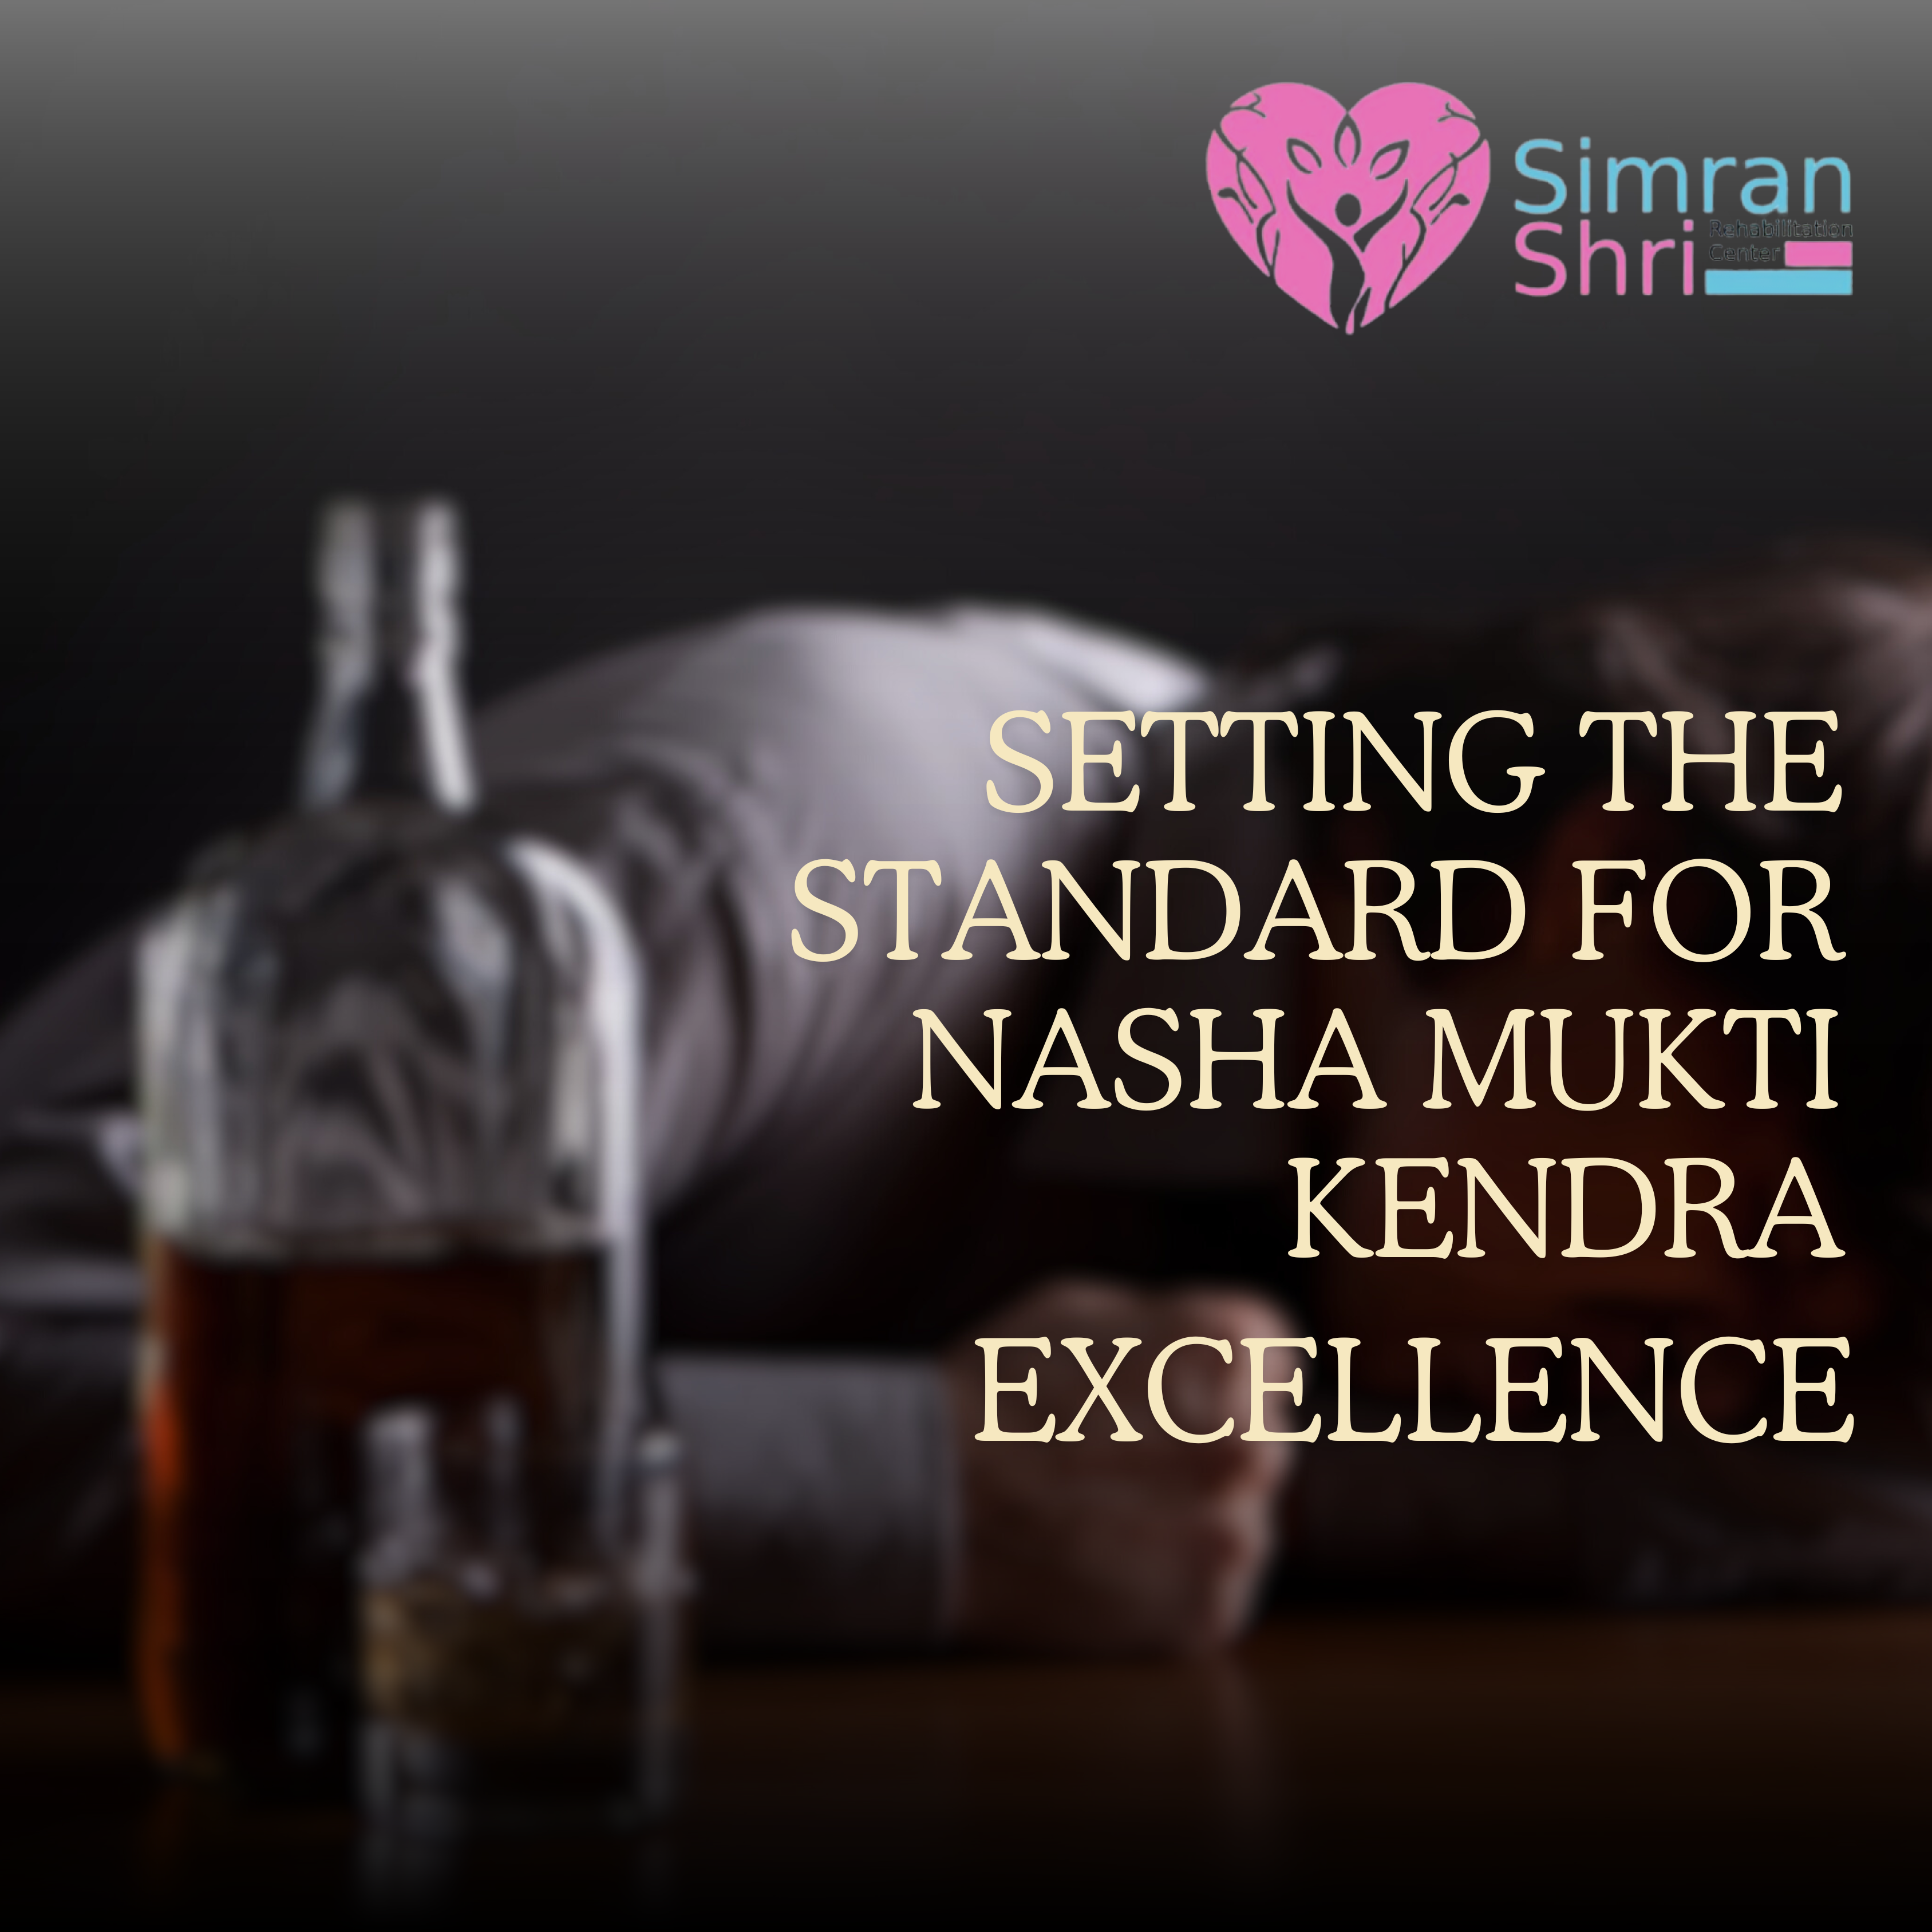  Simranshri Rehabilitation Center: Setting the Standard for Nasha Mukti Kendra  Excellence